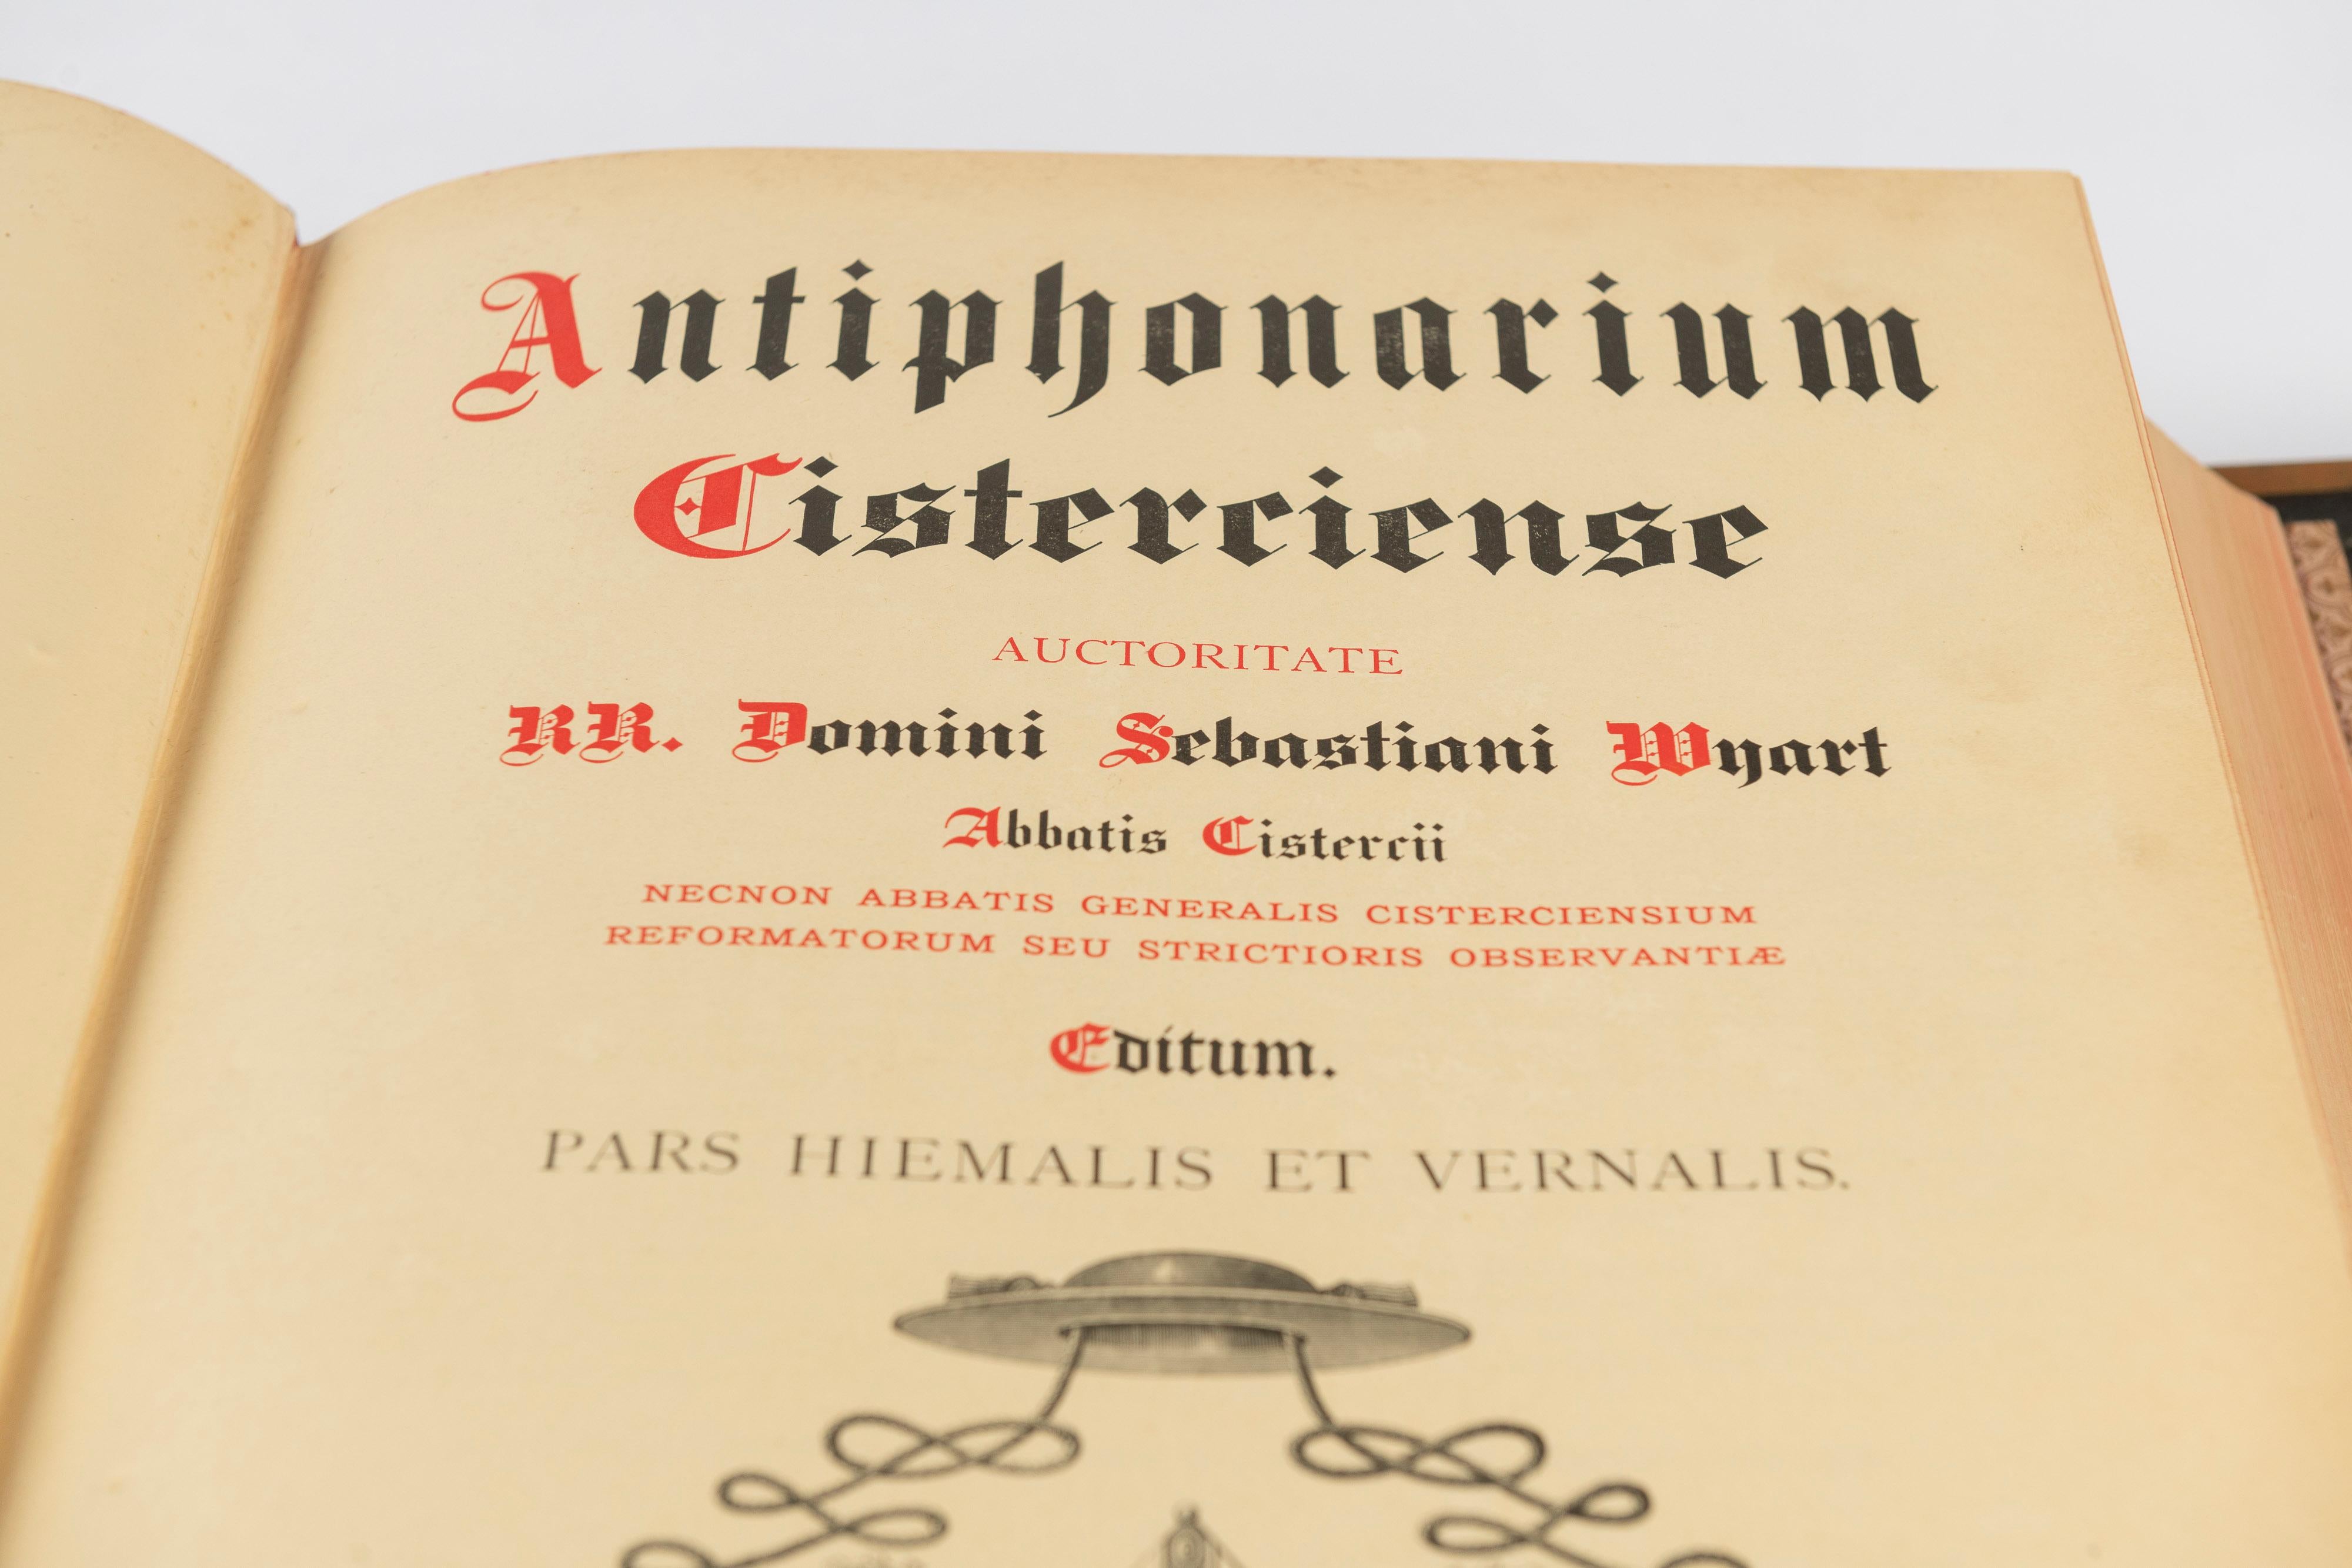 Antique Antiphonarium Cisterciense, Par Hiemalis, Choir Book for Winter, 1903 For Sale 4